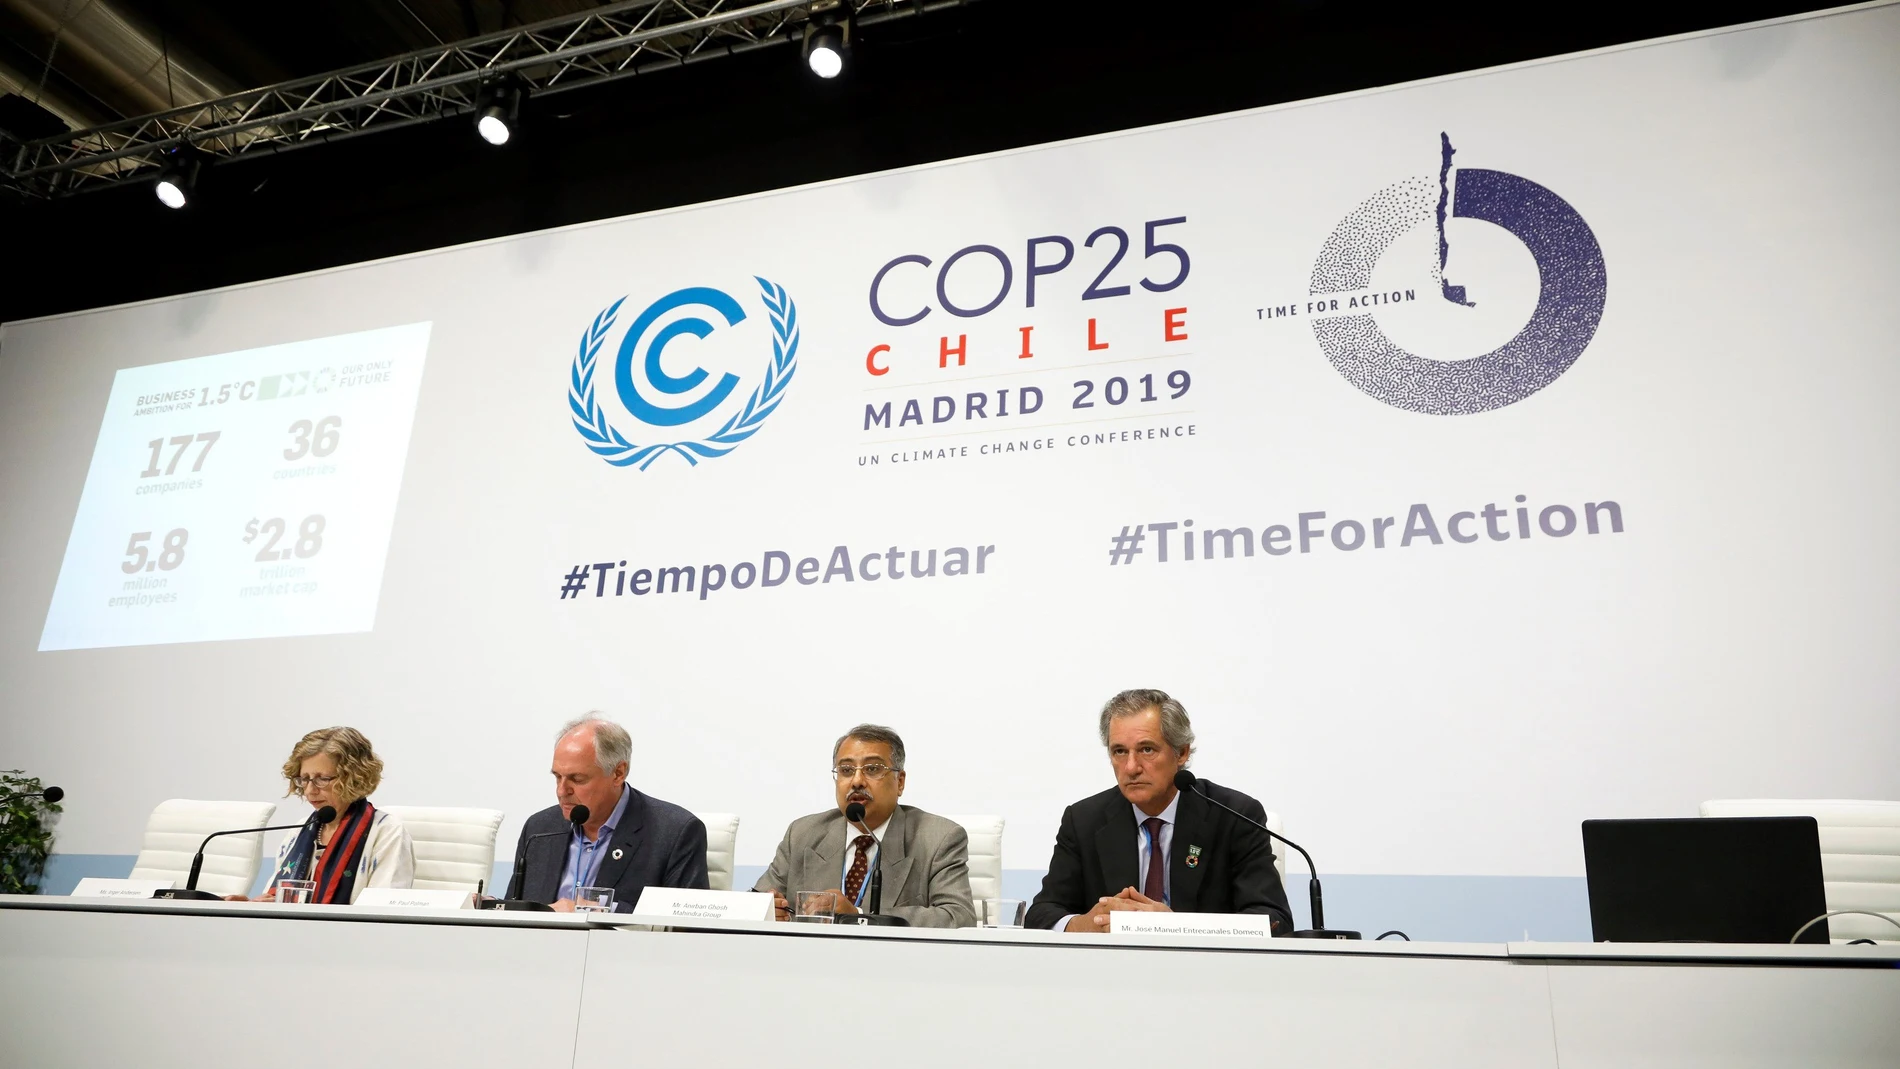 Acuerdo global de 174 empresas para descarbonizar la economía